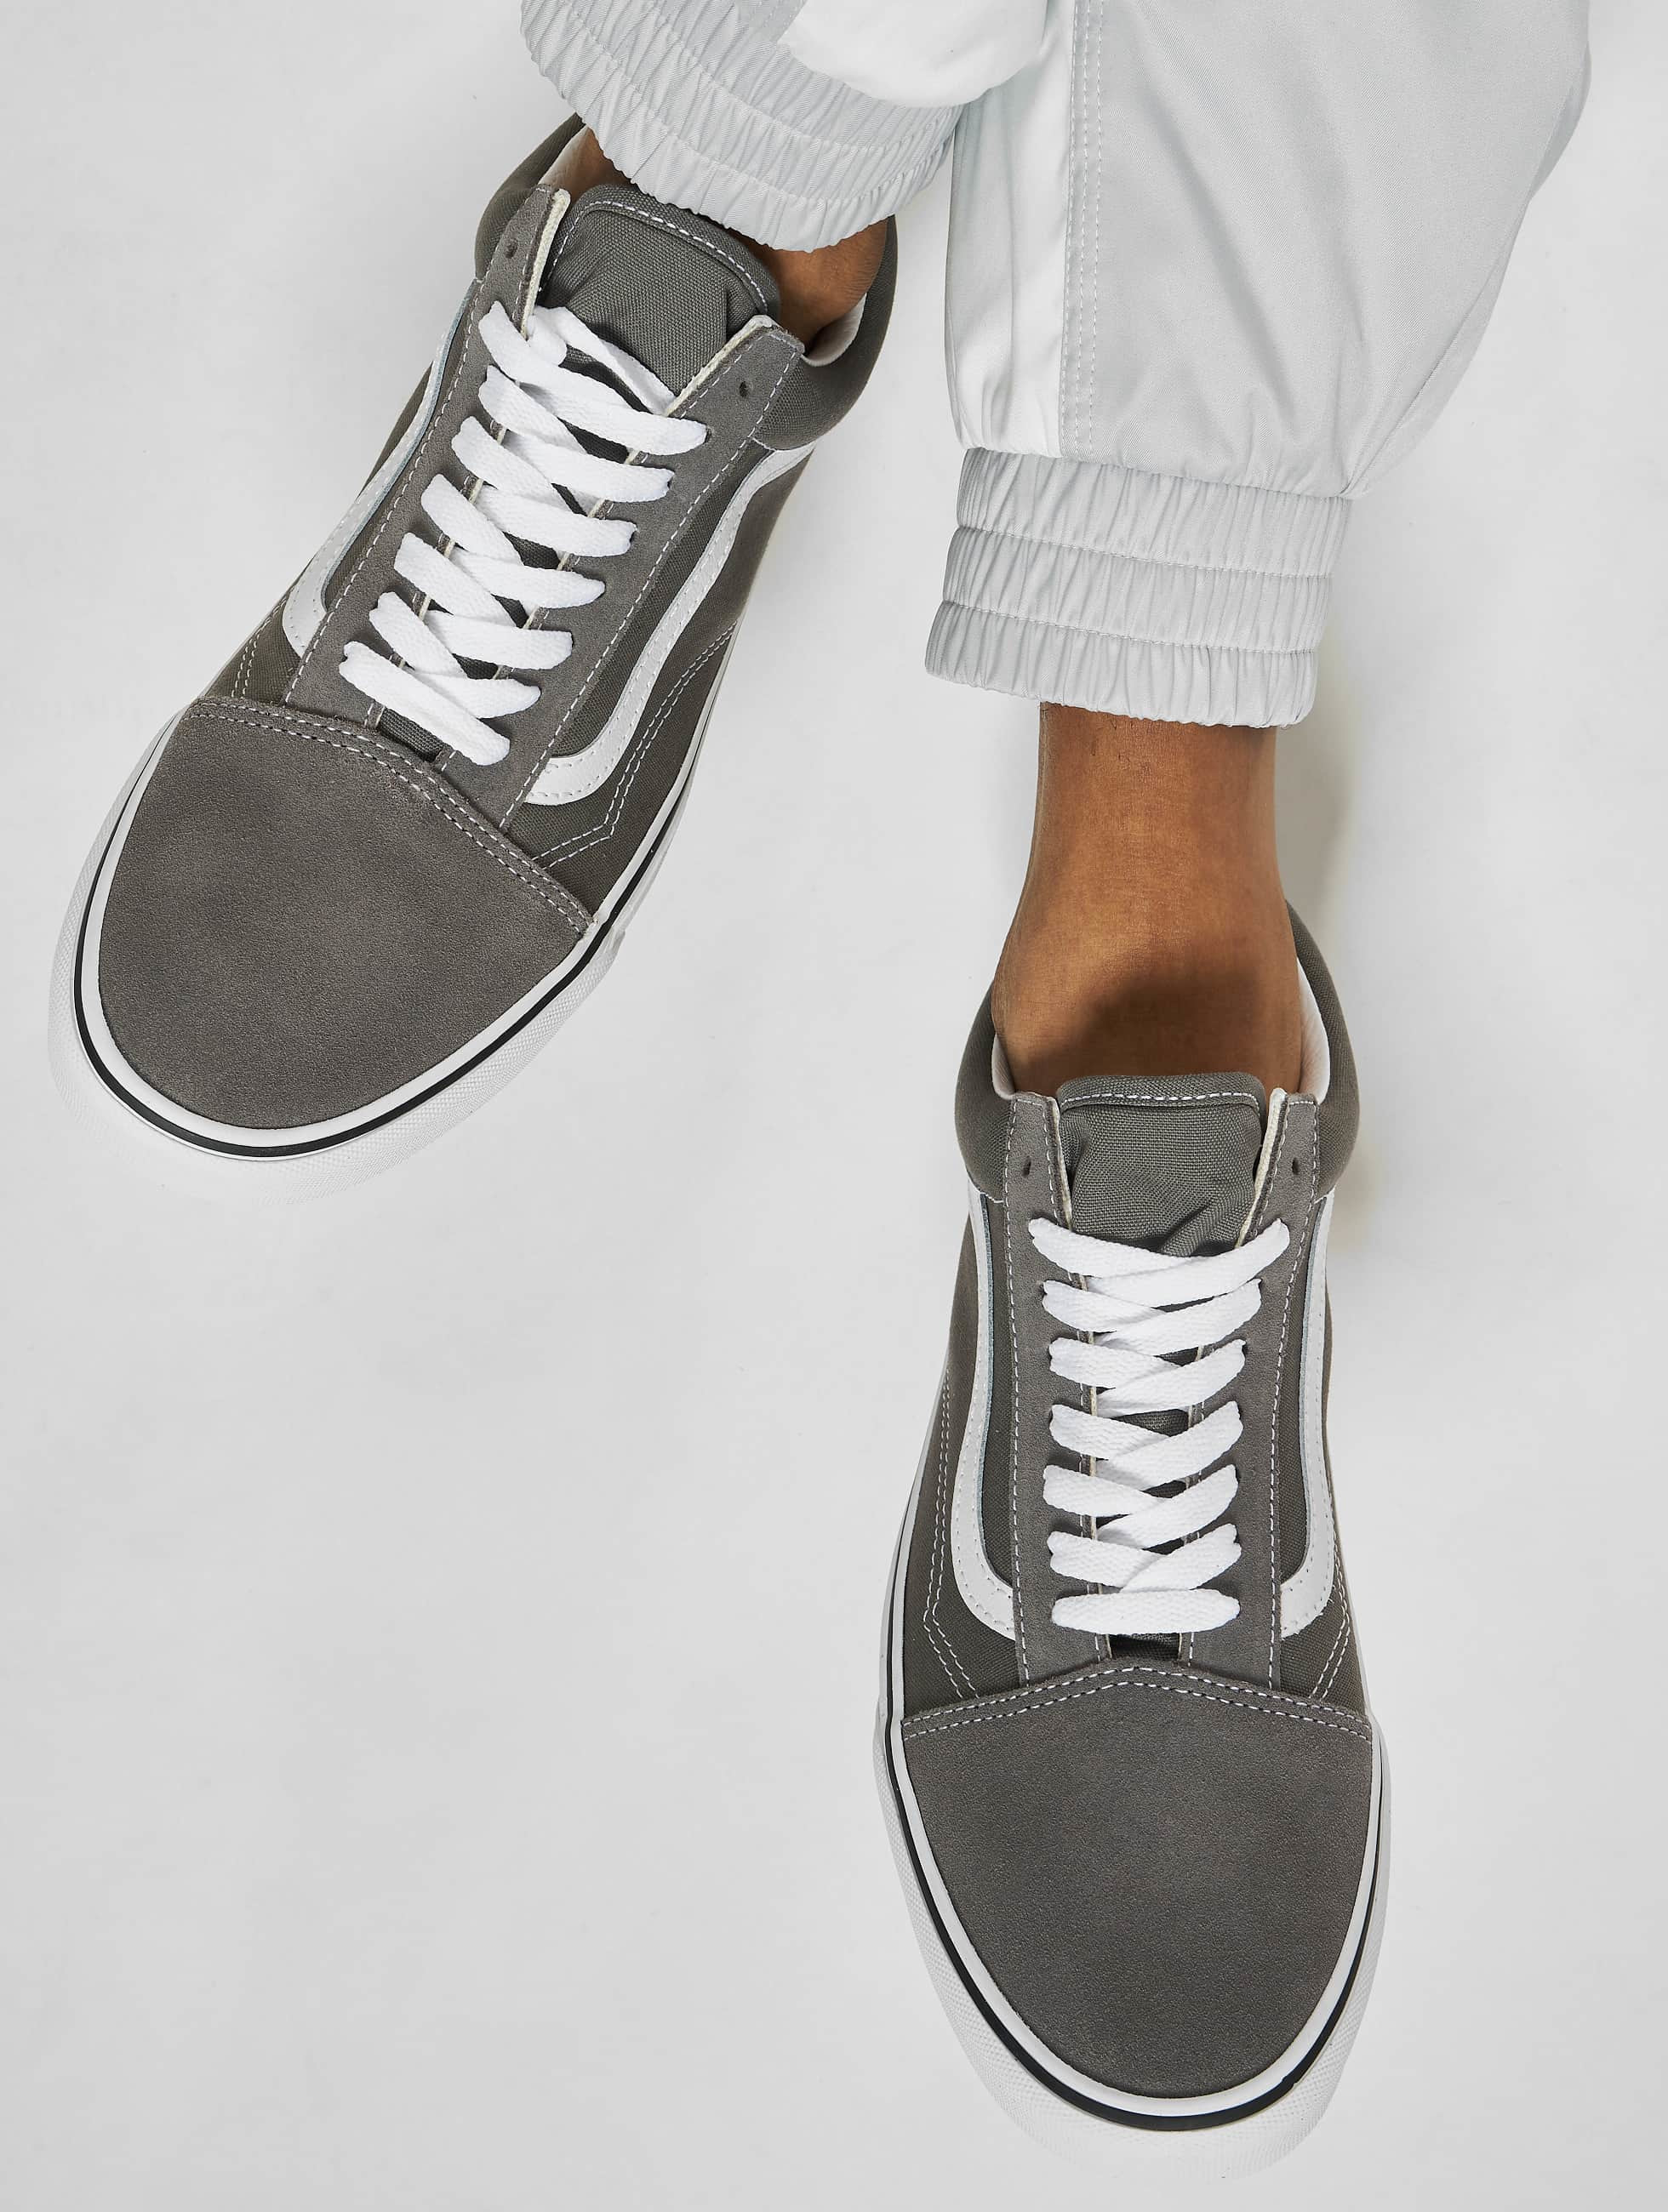 Vans Shoe / Sneakers Old Skool in grey